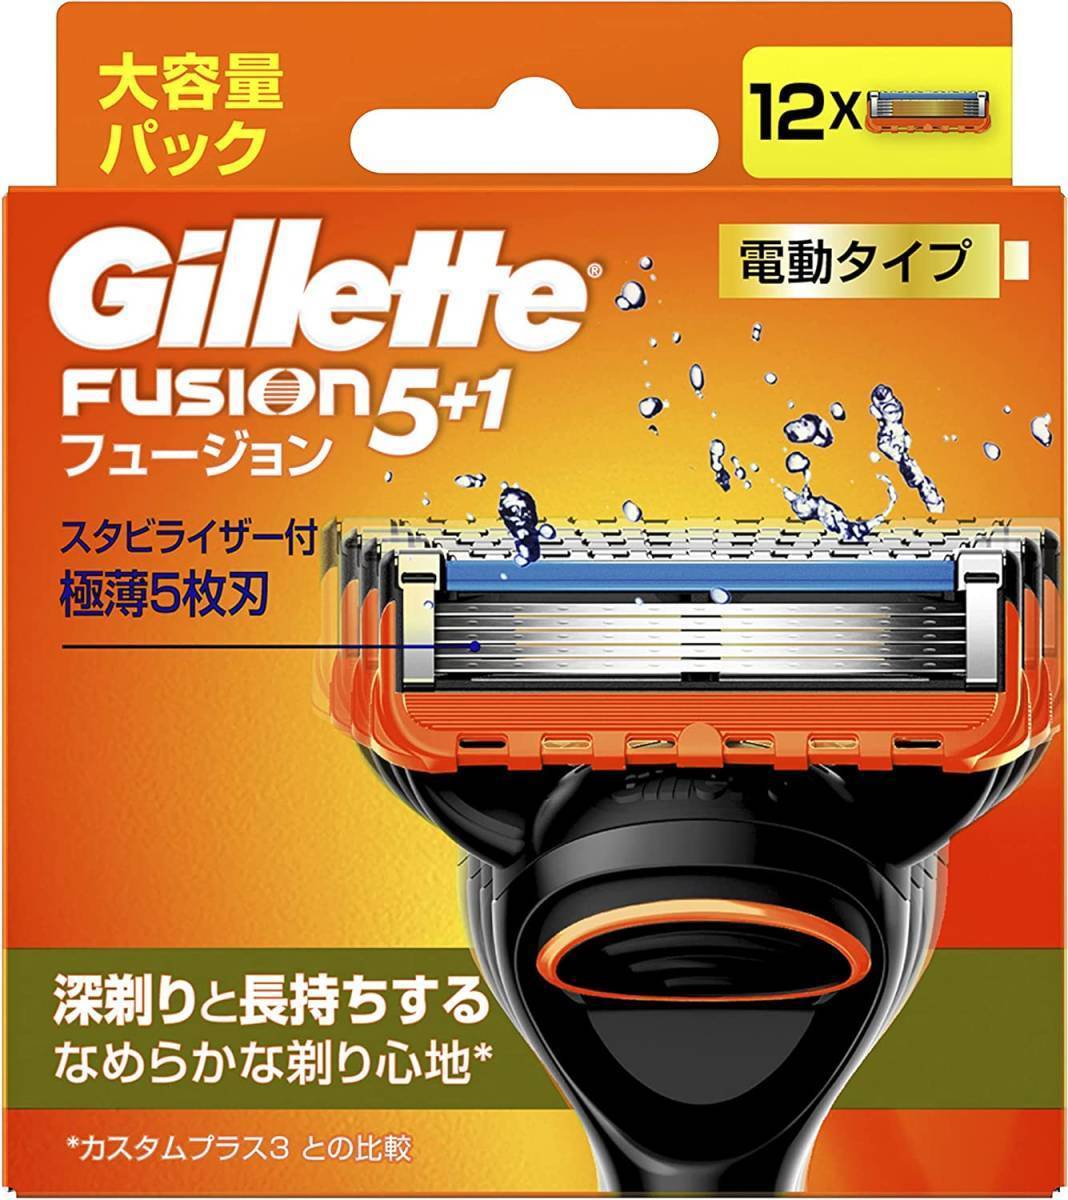 在4(志木)新品 送料無料★Gillette/ジレット 電動タイプ フュージョン5+1 替刃 12個入 大容量パック_画像1